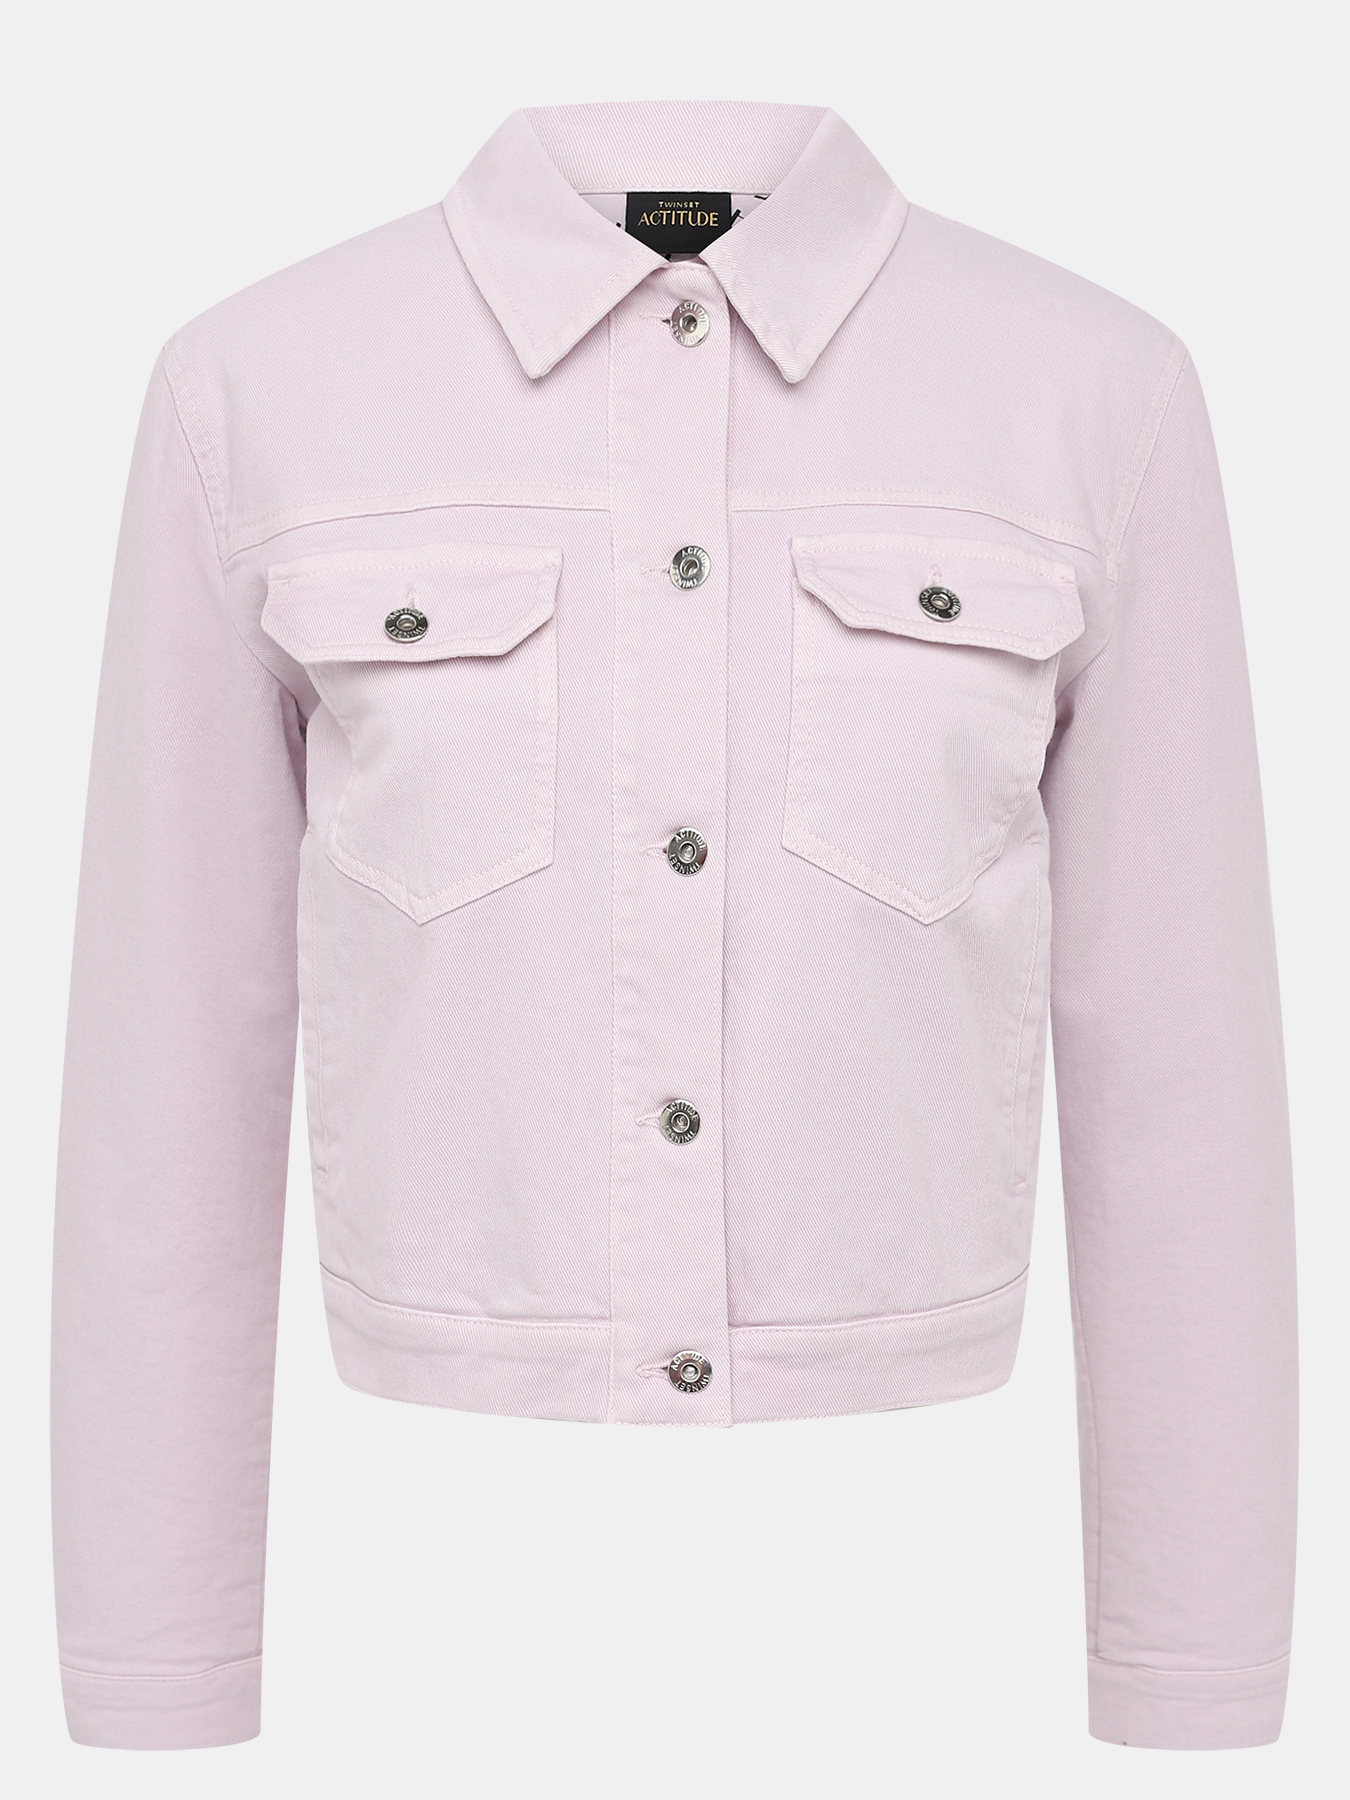 Джинсовая куртка TWINSET ACTITUDE 402259-044, цвет сиреневый, размер 46-48